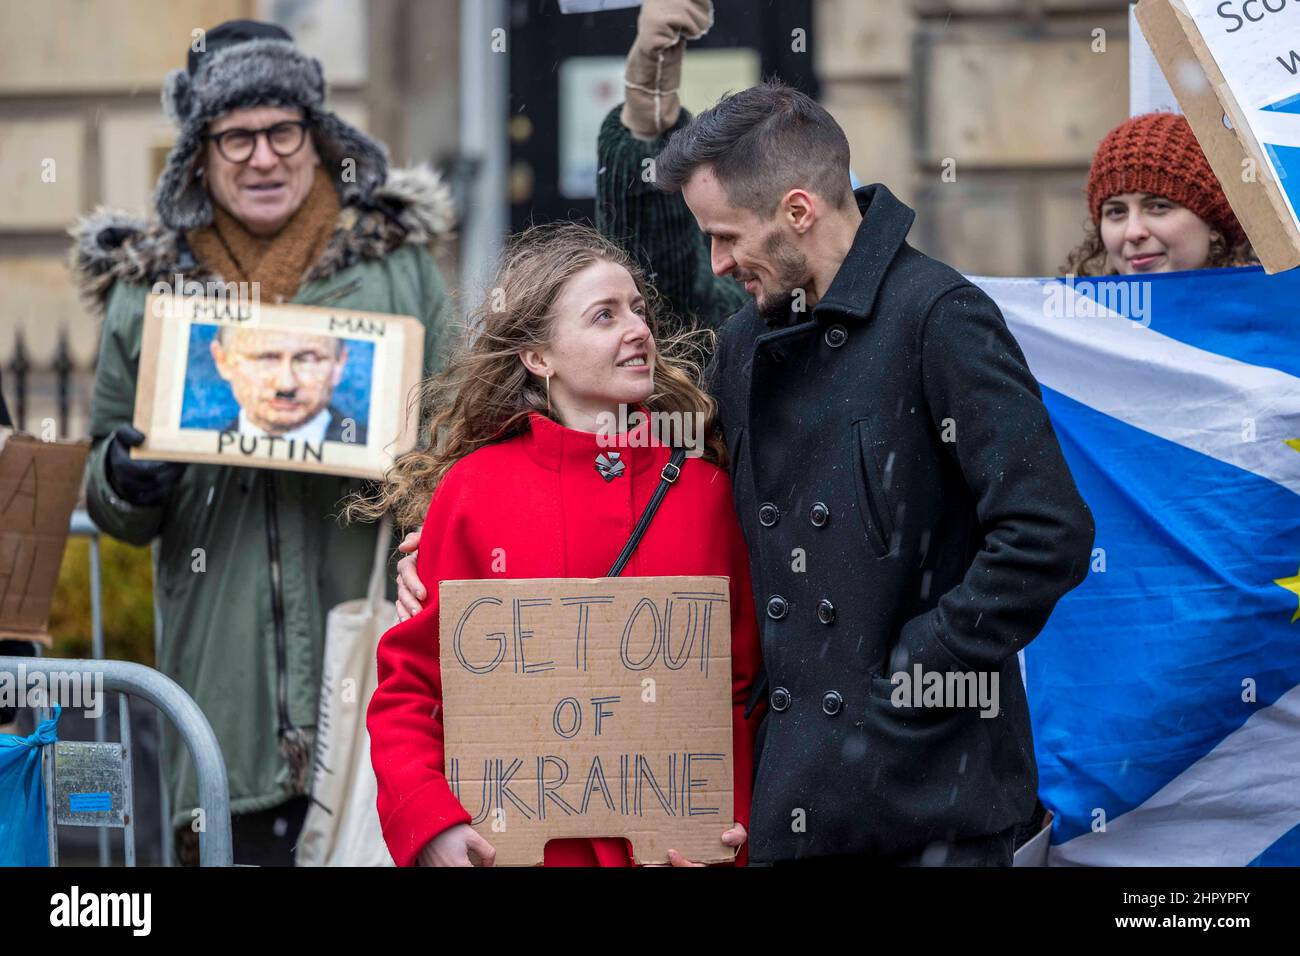 Edinburgh, Großbritannien. 24. Februar 2022 im Bild: Demonstranten versammeln sich vor dem russischen Generalkonsulat in Edinburgh, um gegen die Invasion der Ukraine durch Russland zu demonstrieren. Kredit: Rich Dyson/Alamy Live Nachrichten Stockfoto